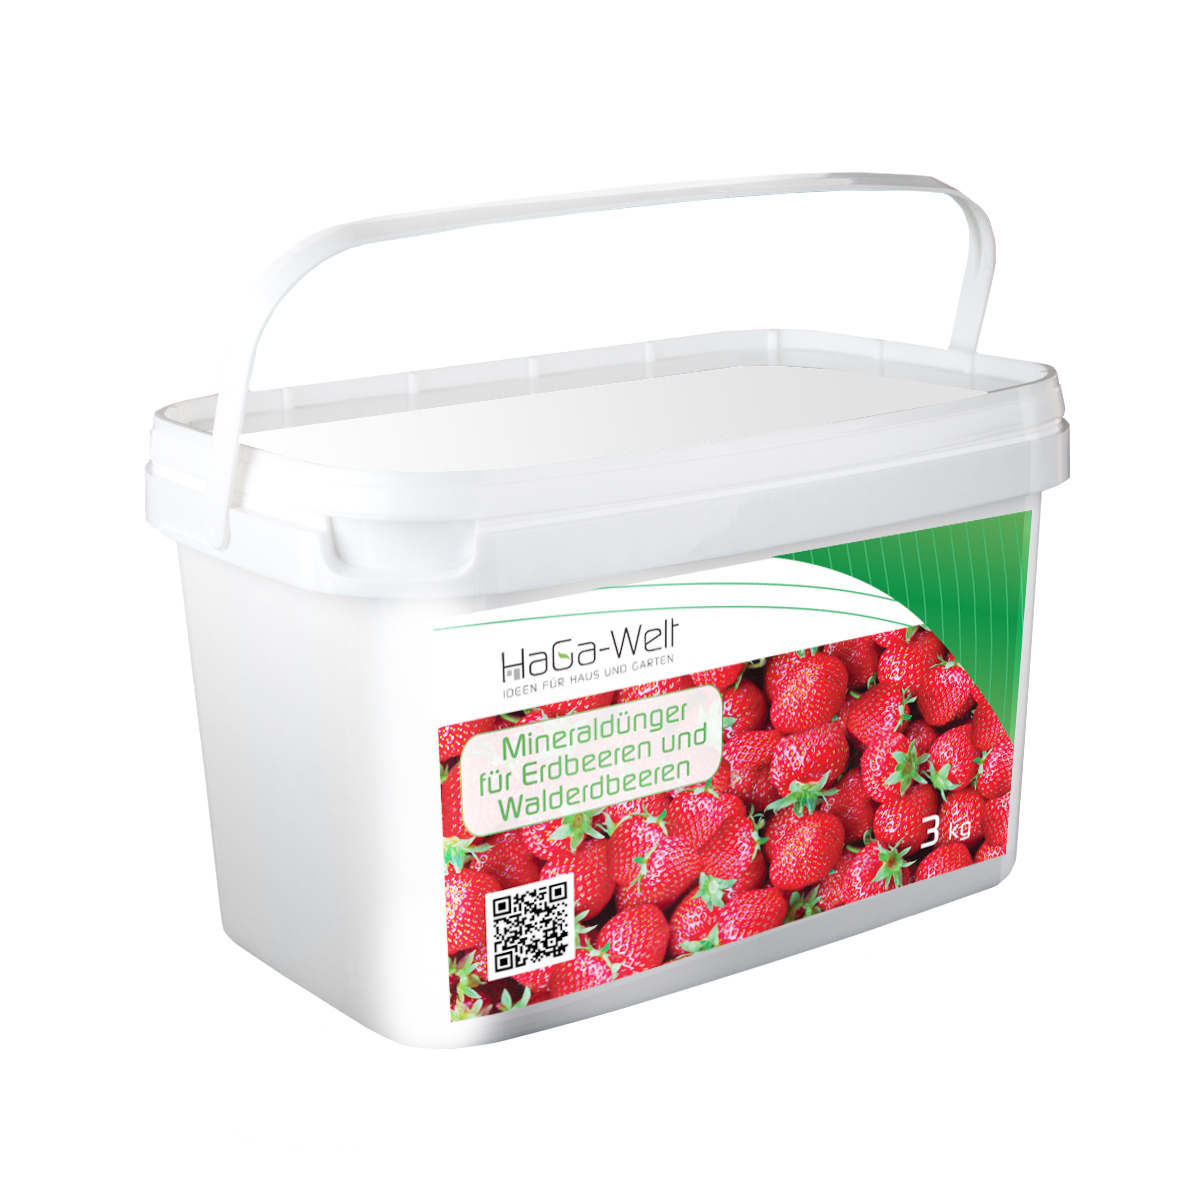 Engrais minéral pour les fraises et les fraises des bois Engrais 3kg